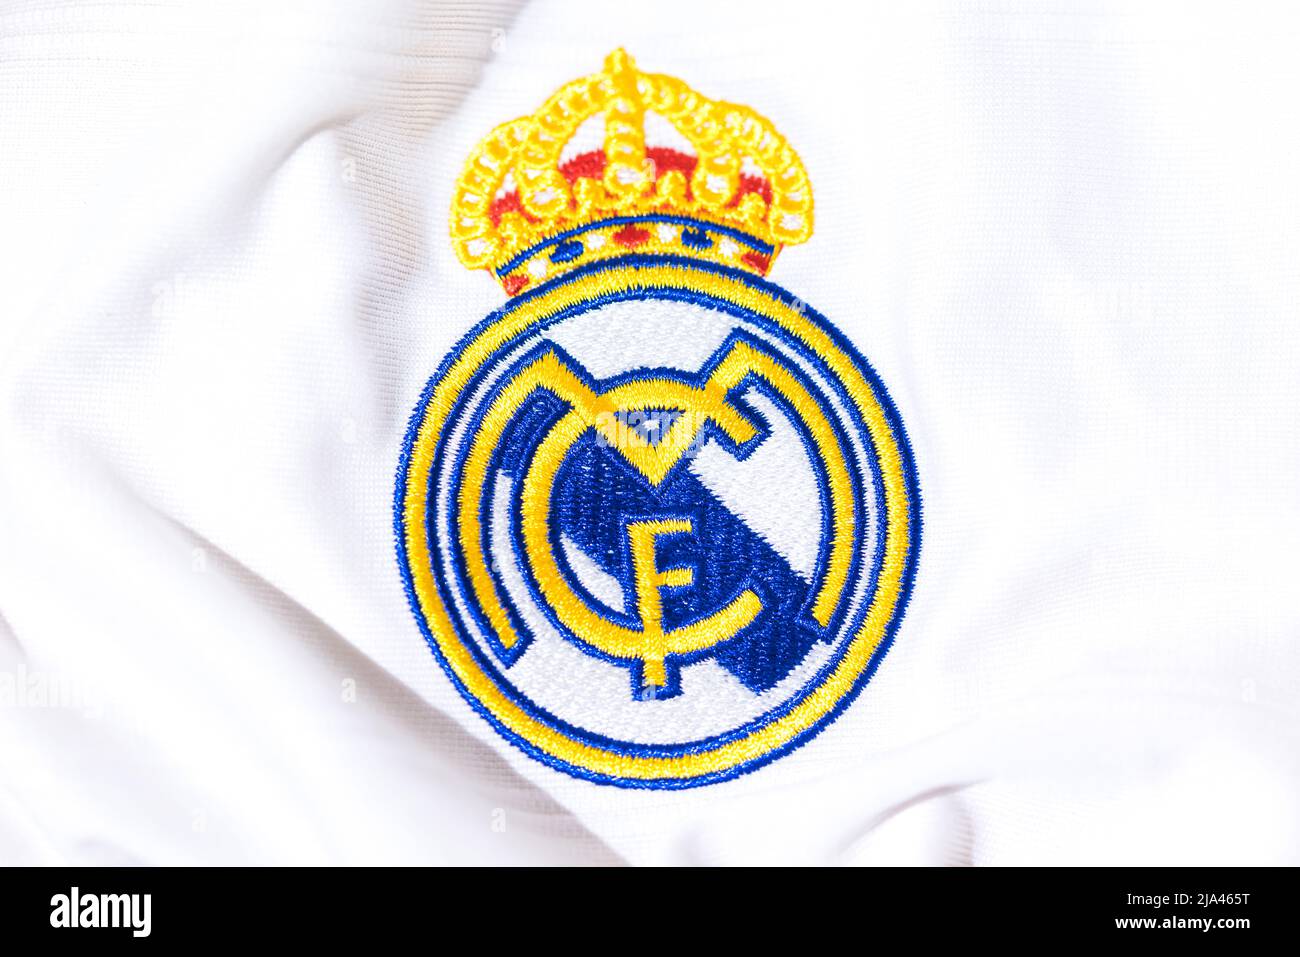 Escudo en la camiseta blanca del Real Madrid Football Club. UEFA CHAMPIONS LEAGUE FINAL CONCEPTO EL 28 DE MAYO DE 2022, CAMPEÓN, europa, LEAGUE, españa. Foto de stock